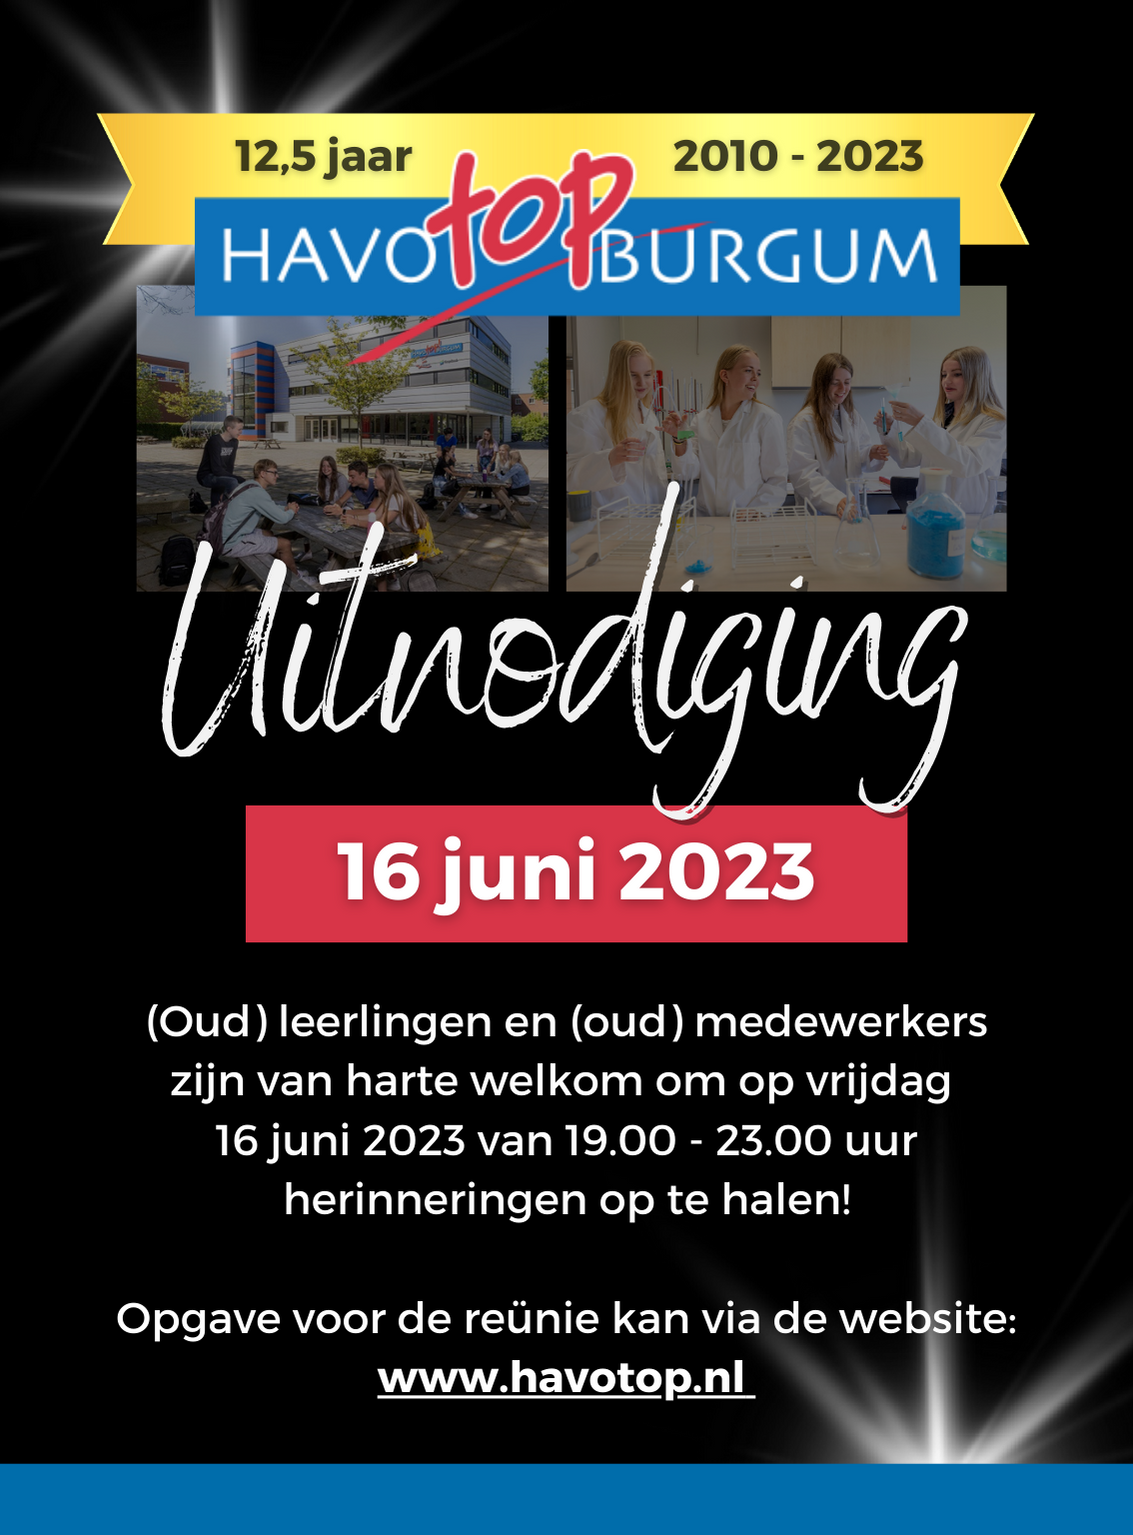 (Oud) leerlingen en (oud) medewerkers zijn van harte welkom om op vrijdag 16 juni 2023 van 19.00 - 23.00 uur herinneringen op te halen! Opgave voor de reünie kan via de website: www.havotop.nl